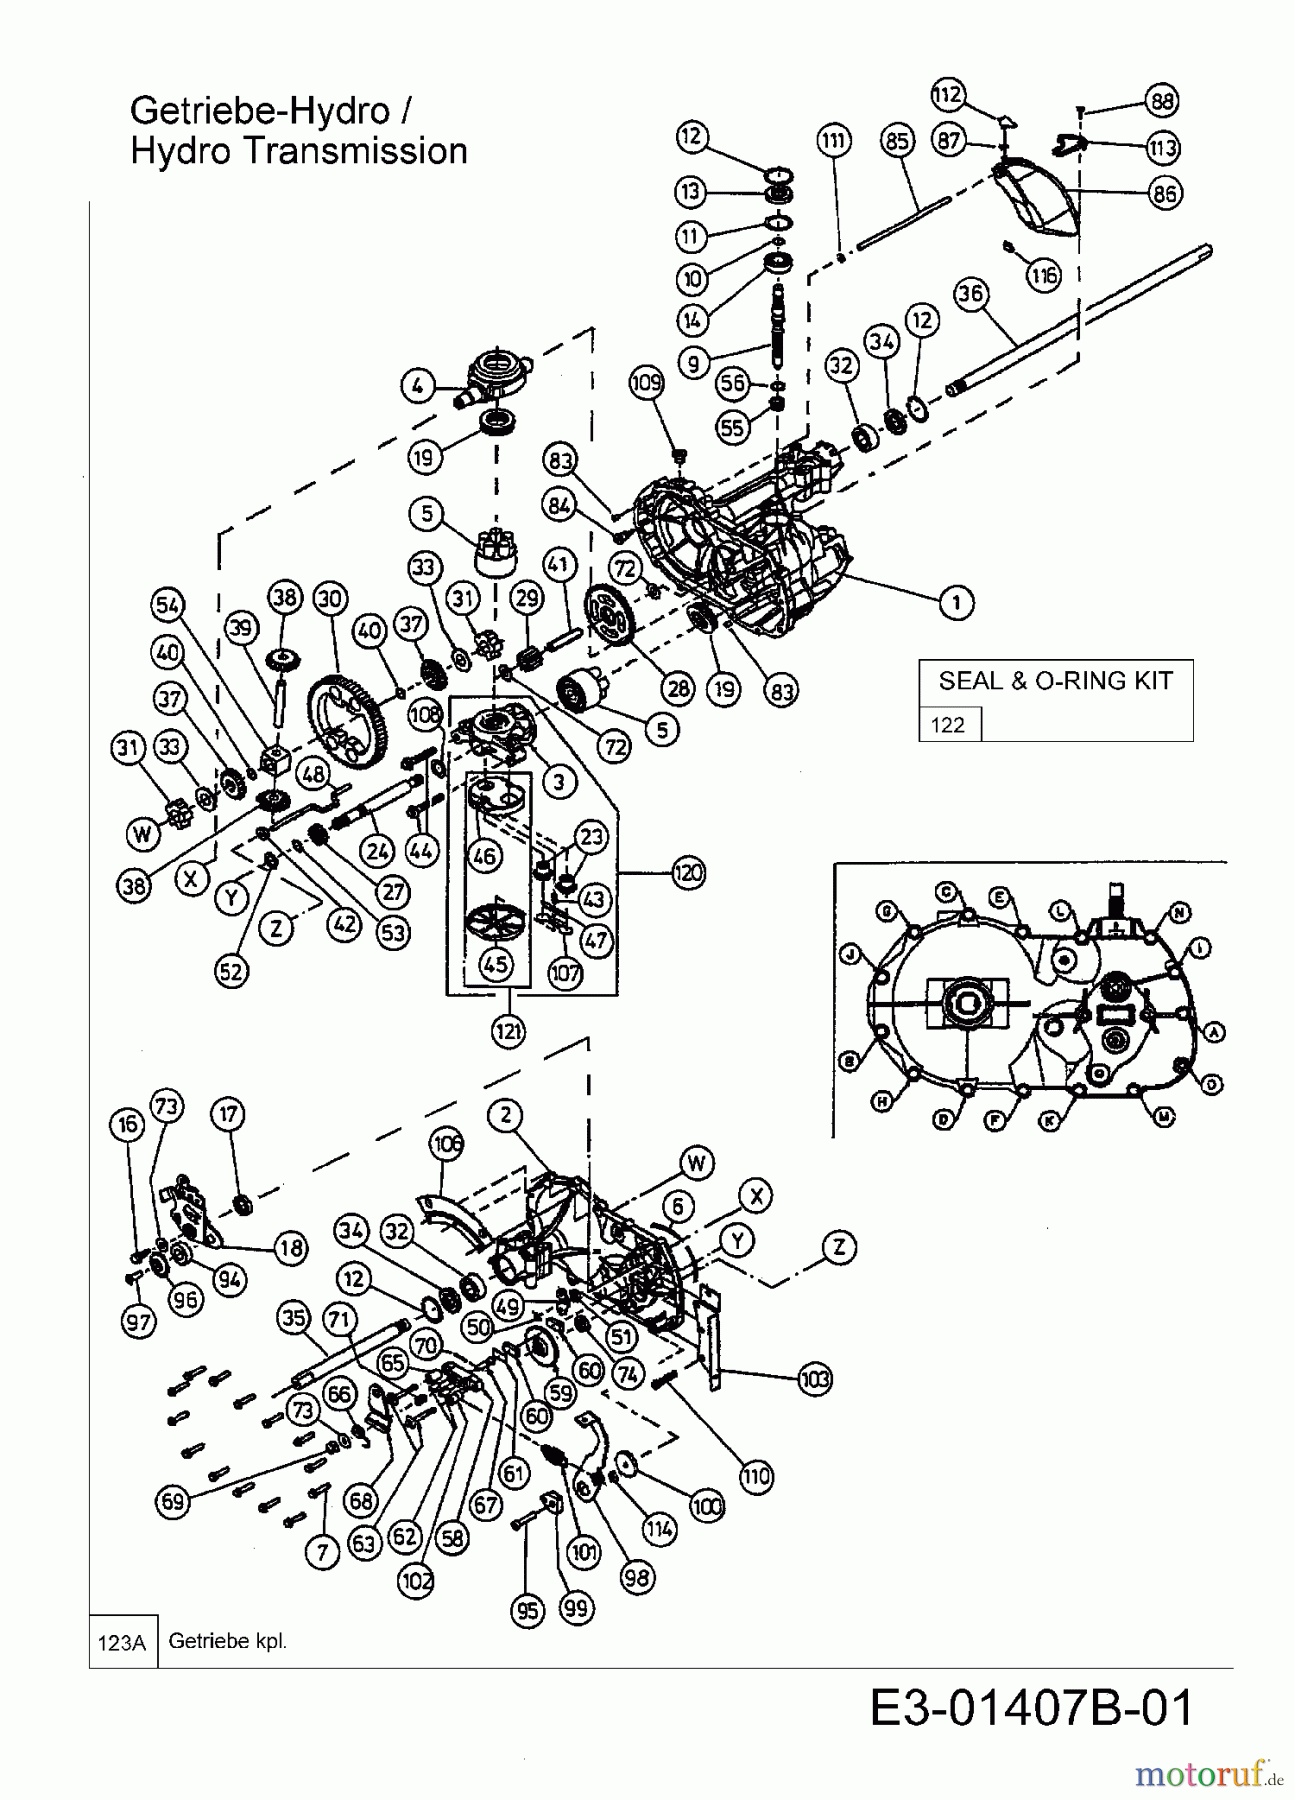  Yard-Man Lawn tractors HG 5180 13BT514G643  (2003) Hydrostatic gearbox